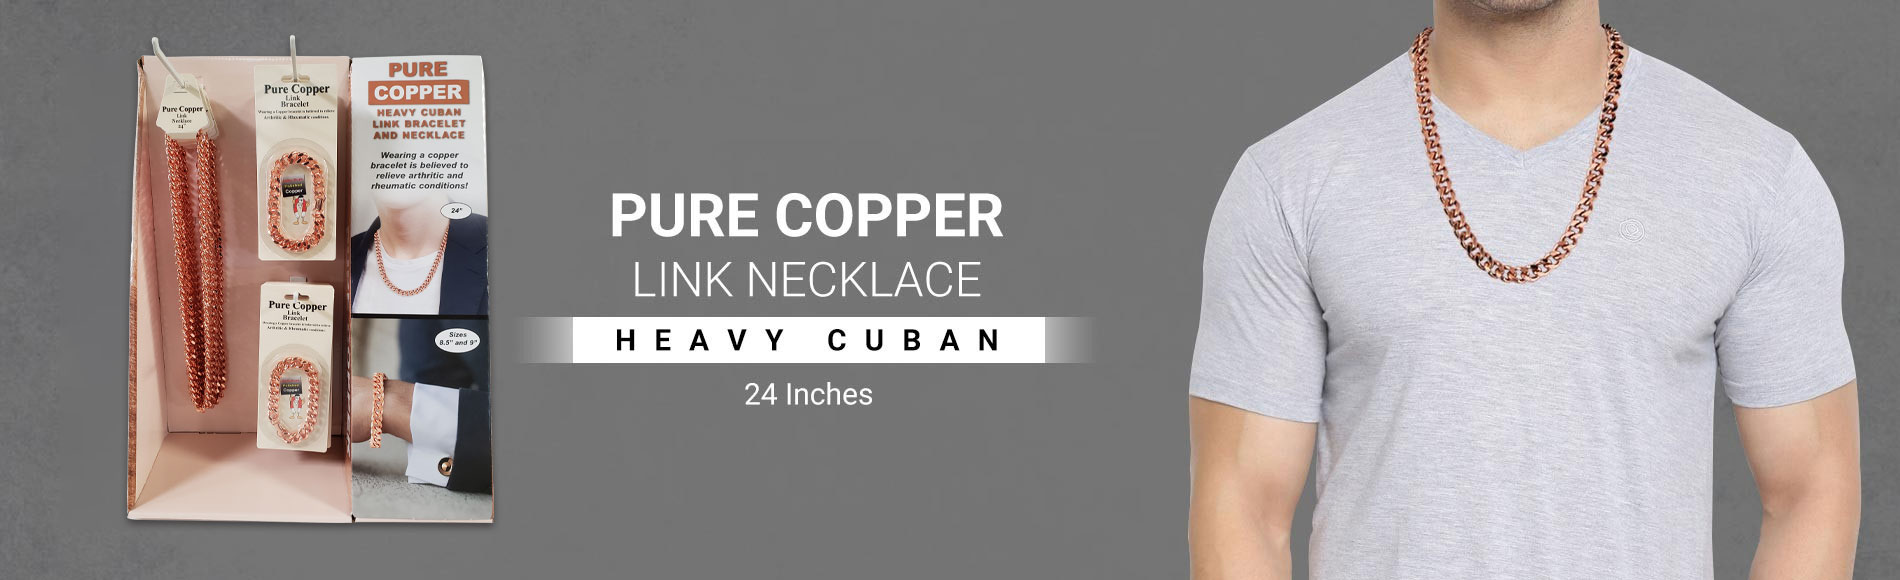 Pure Copper Necklace